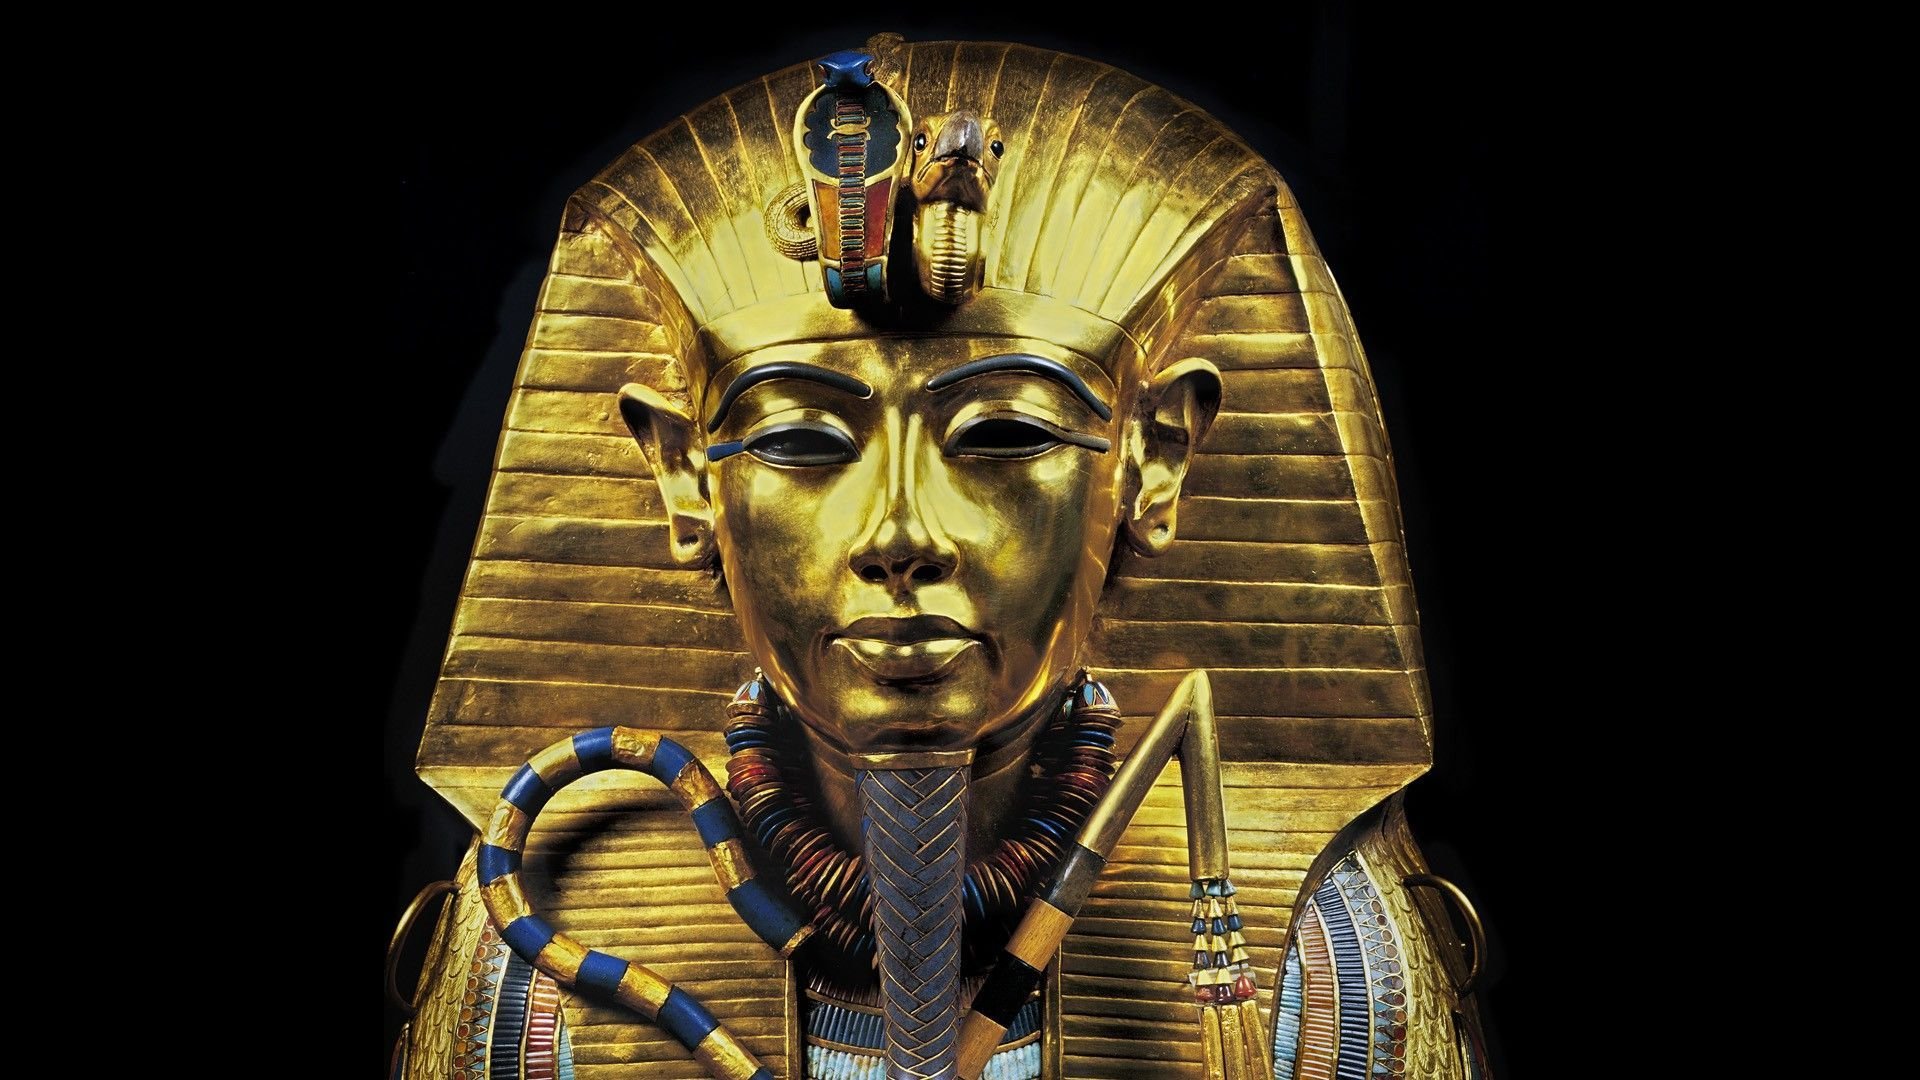 High Resolution Wallpaper | Golden Pharaoh 1920x1080 px